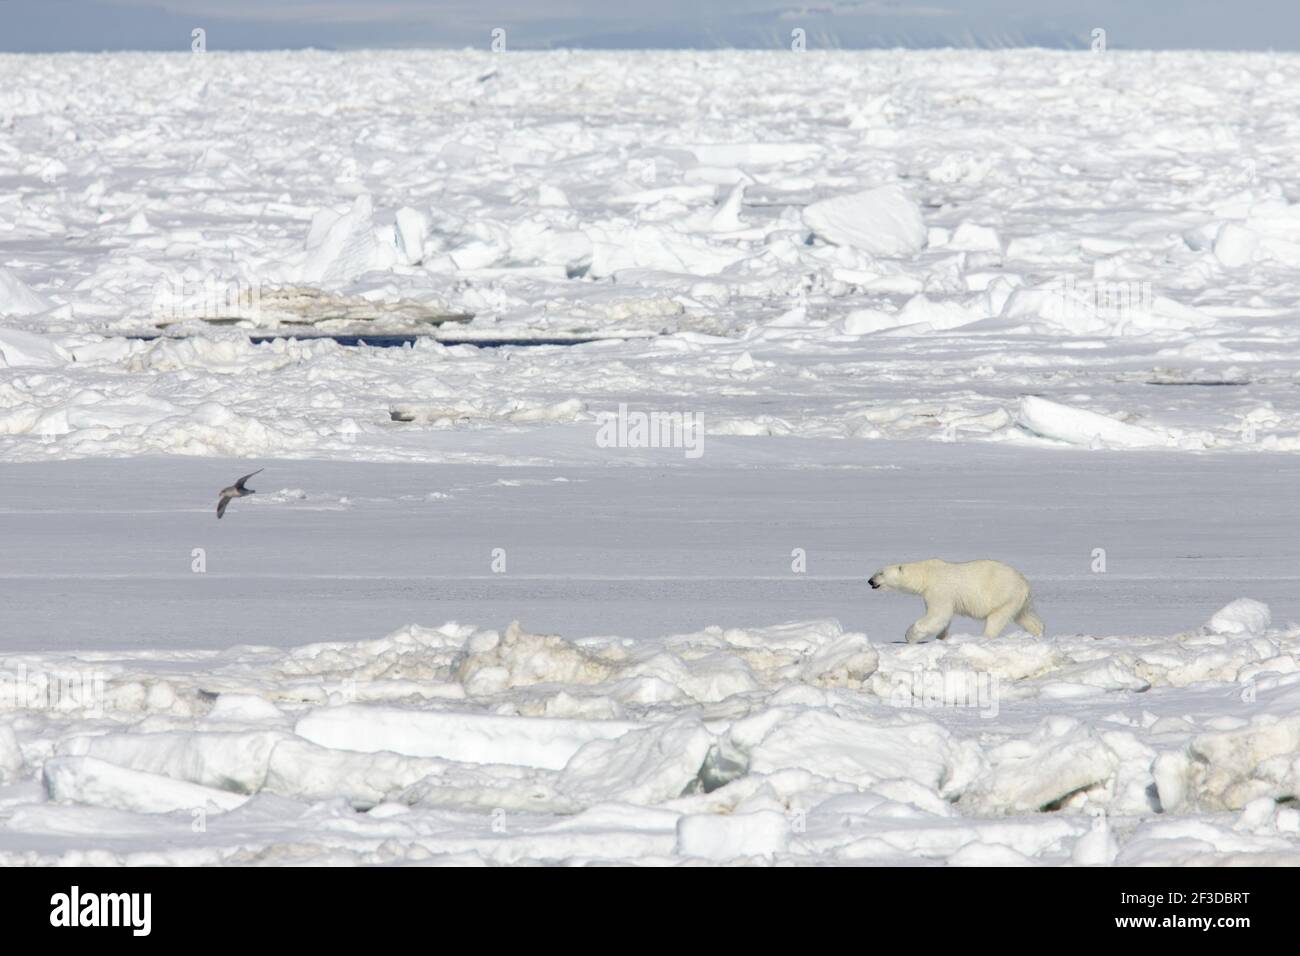 Eisbär - auf MeereisUrsus maritimus Svalbard (Spitzbergen) Norwegen MA001830 Stockfoto